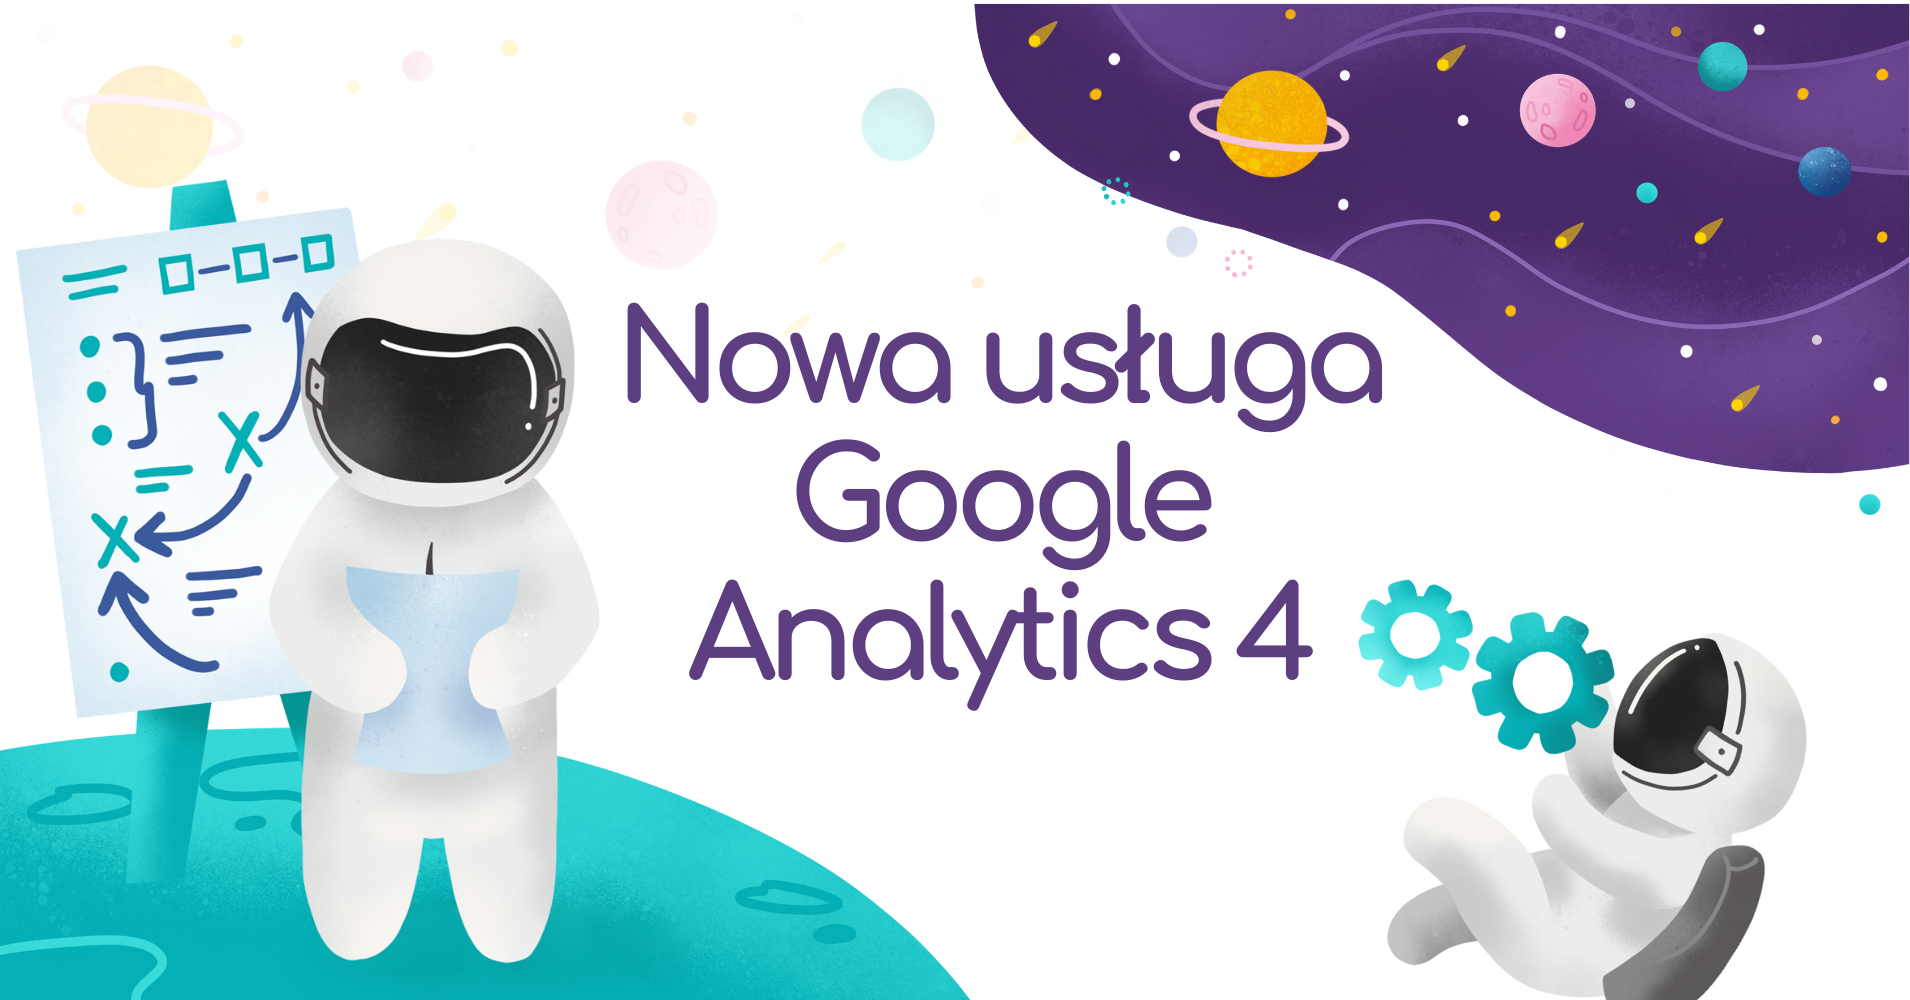 Nowa usługa GA4 –  dlaczego warto wdrożyć Google Analytics 4? Poznaj zalety usługi Google Analytics 4!